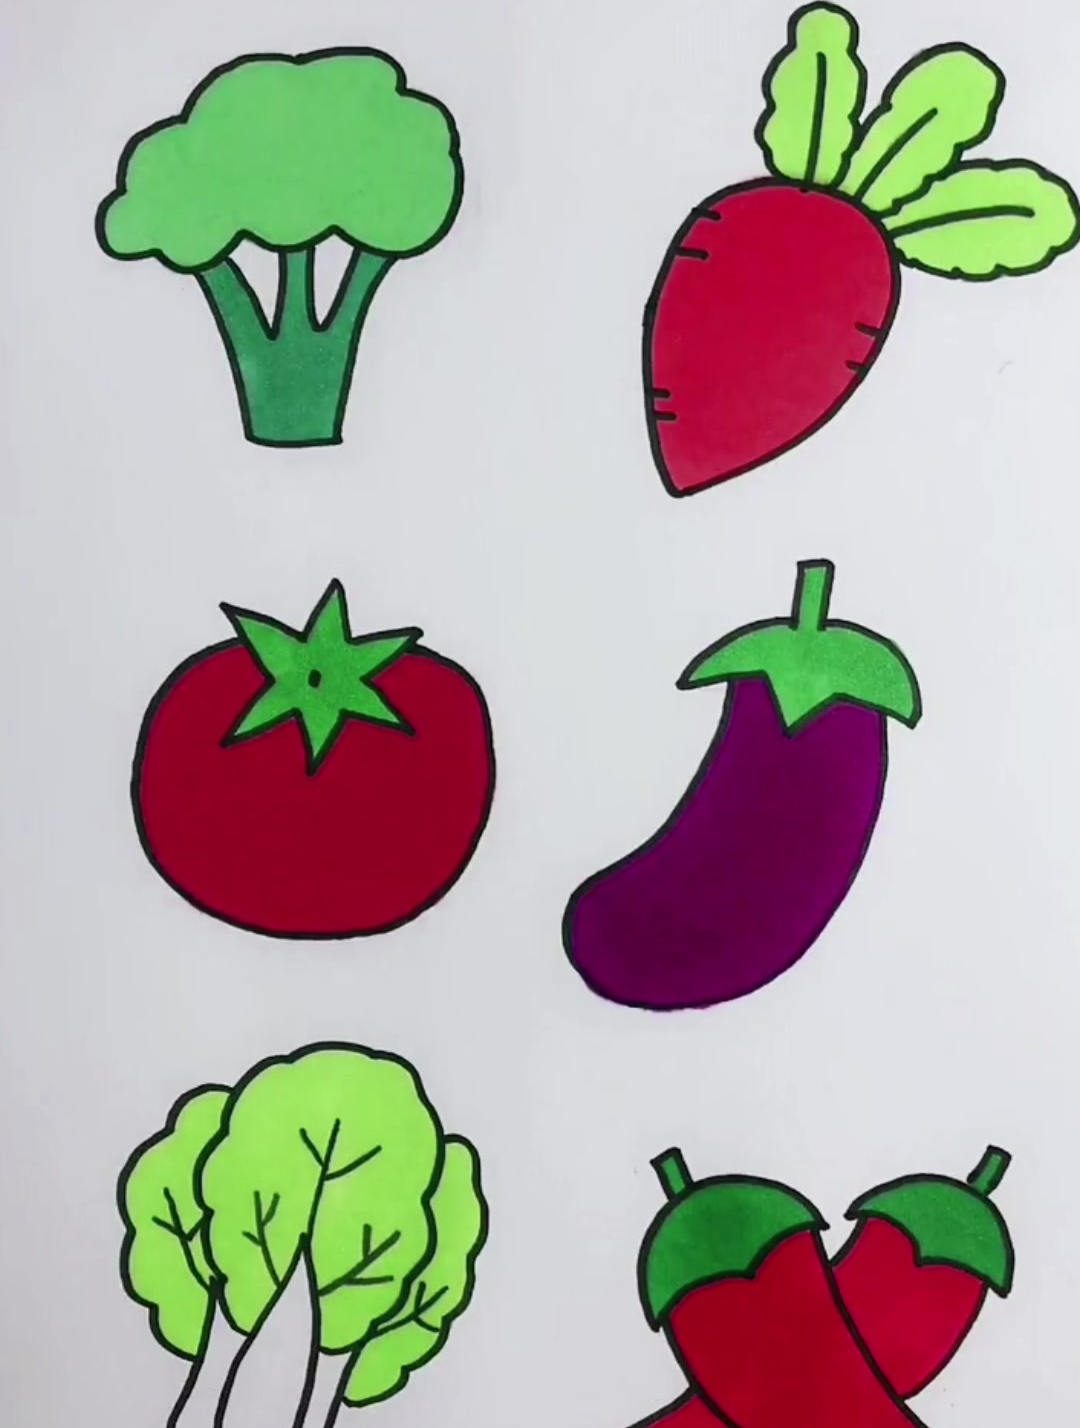 各种蔬菜简笔画,大白菜,萝卜,南瓜,西红柿简笔画,超简单!